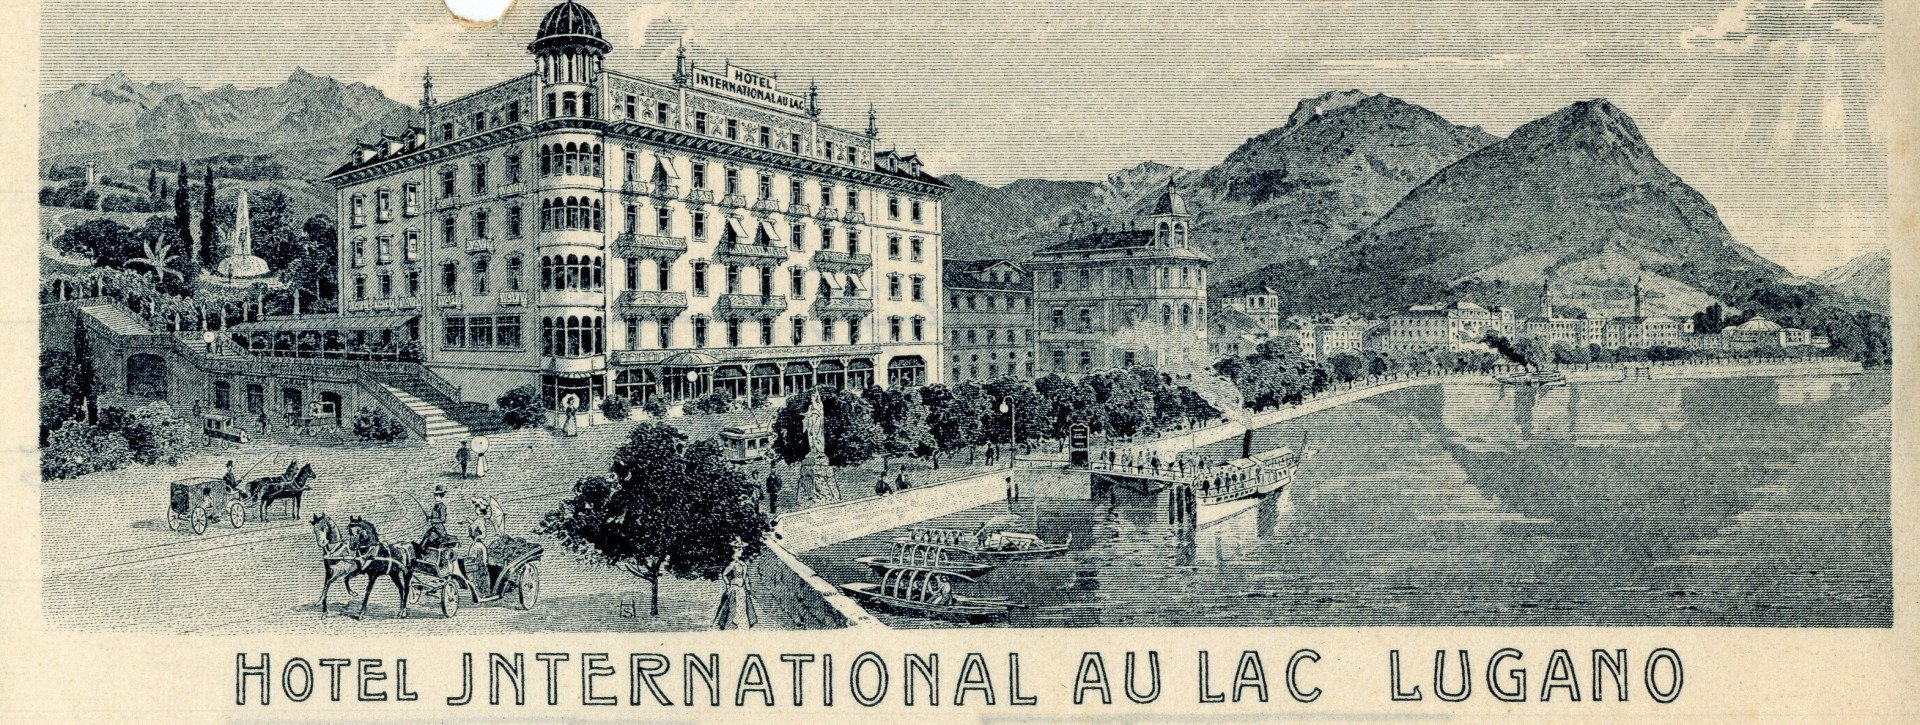 Historisches Bild des Hotel International au Lac Lugano